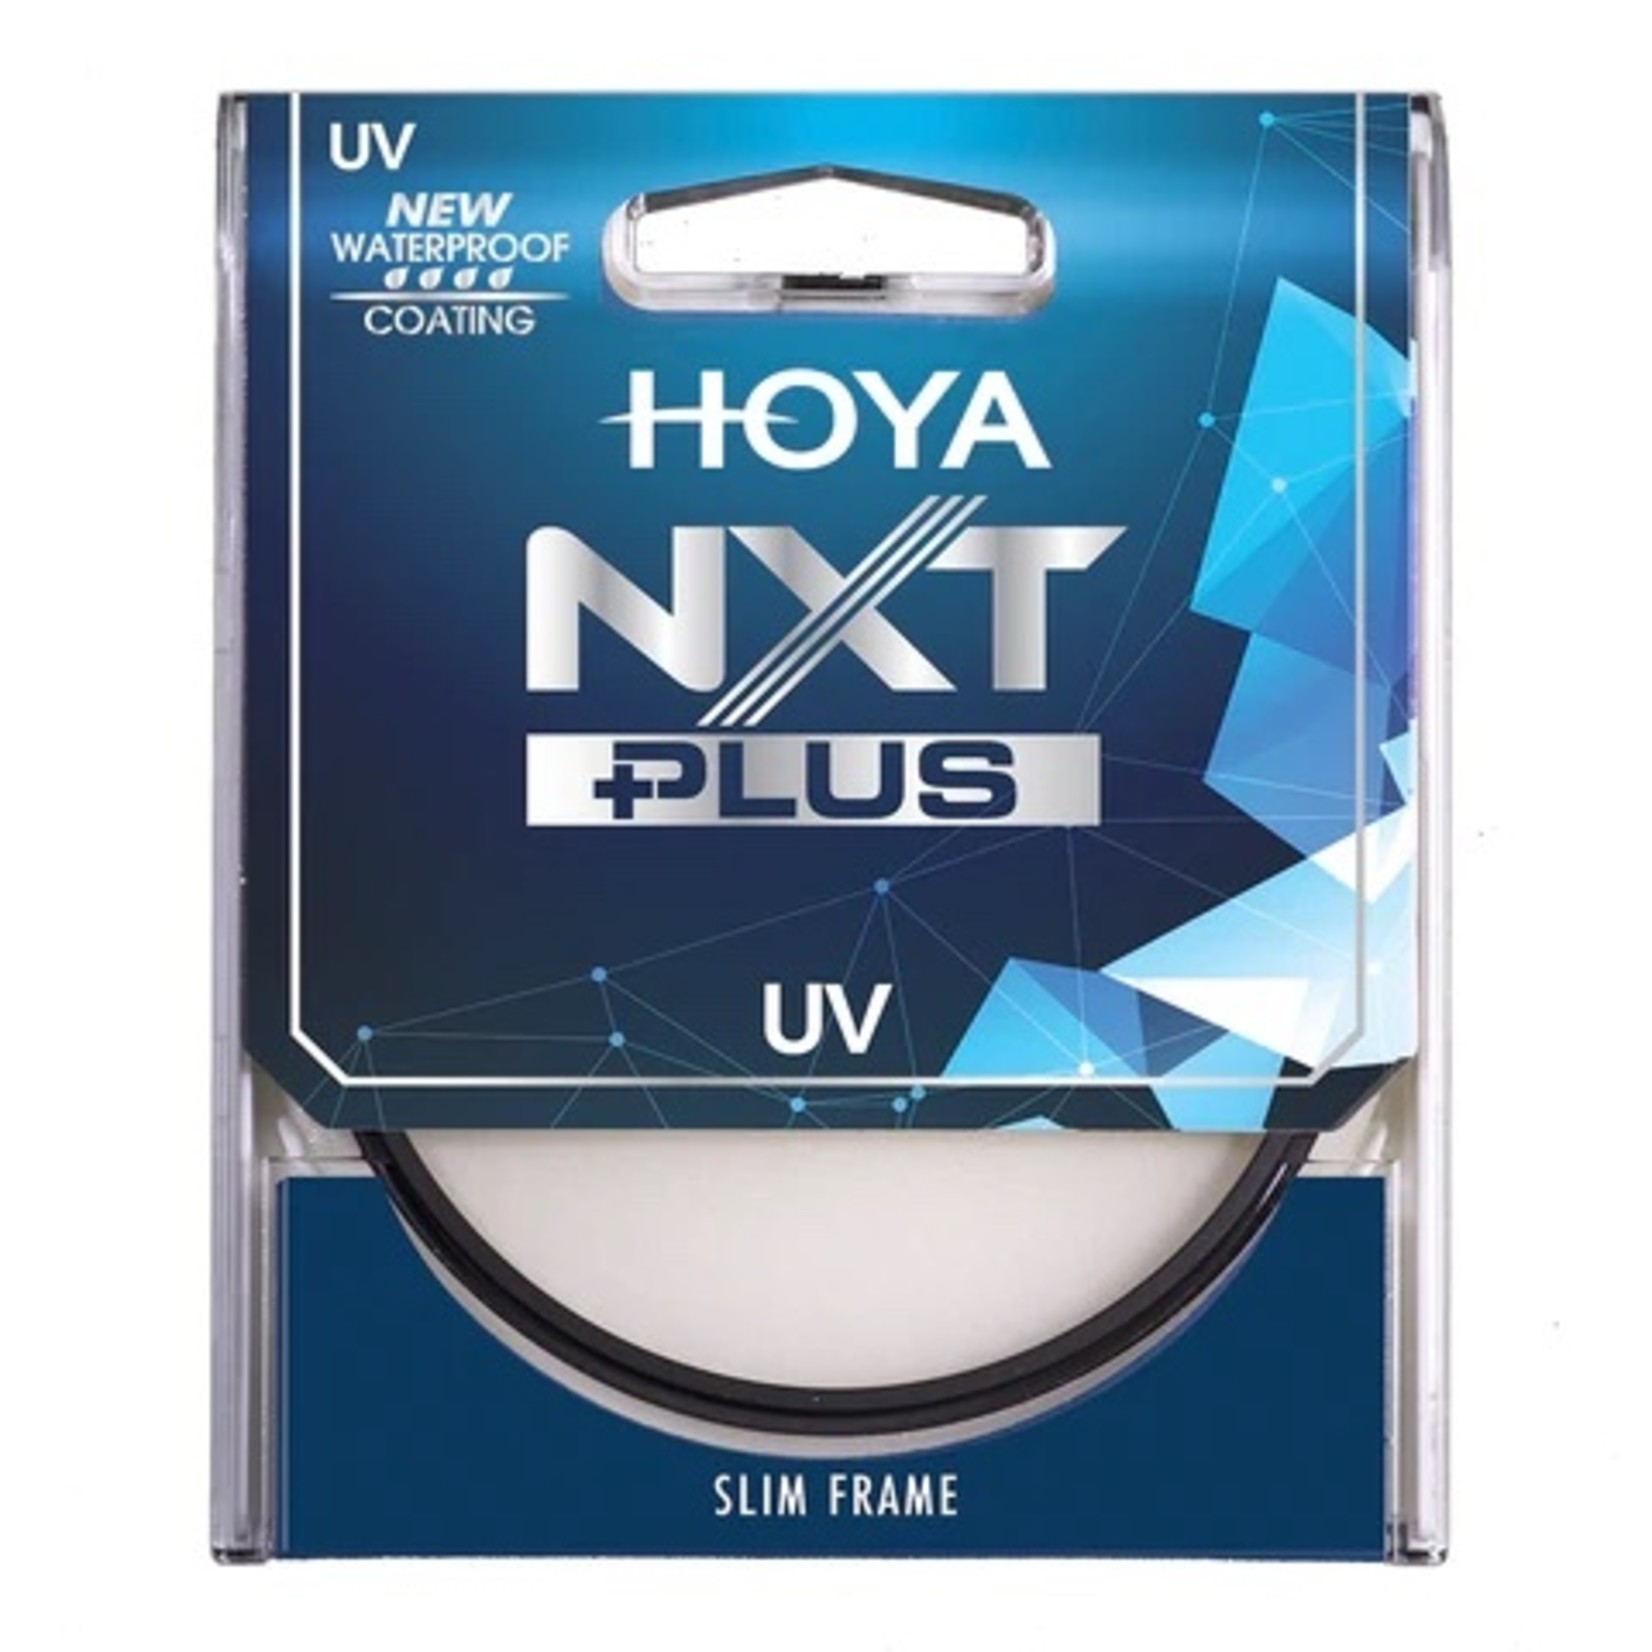 Hoya HOYA NXT Plus UV